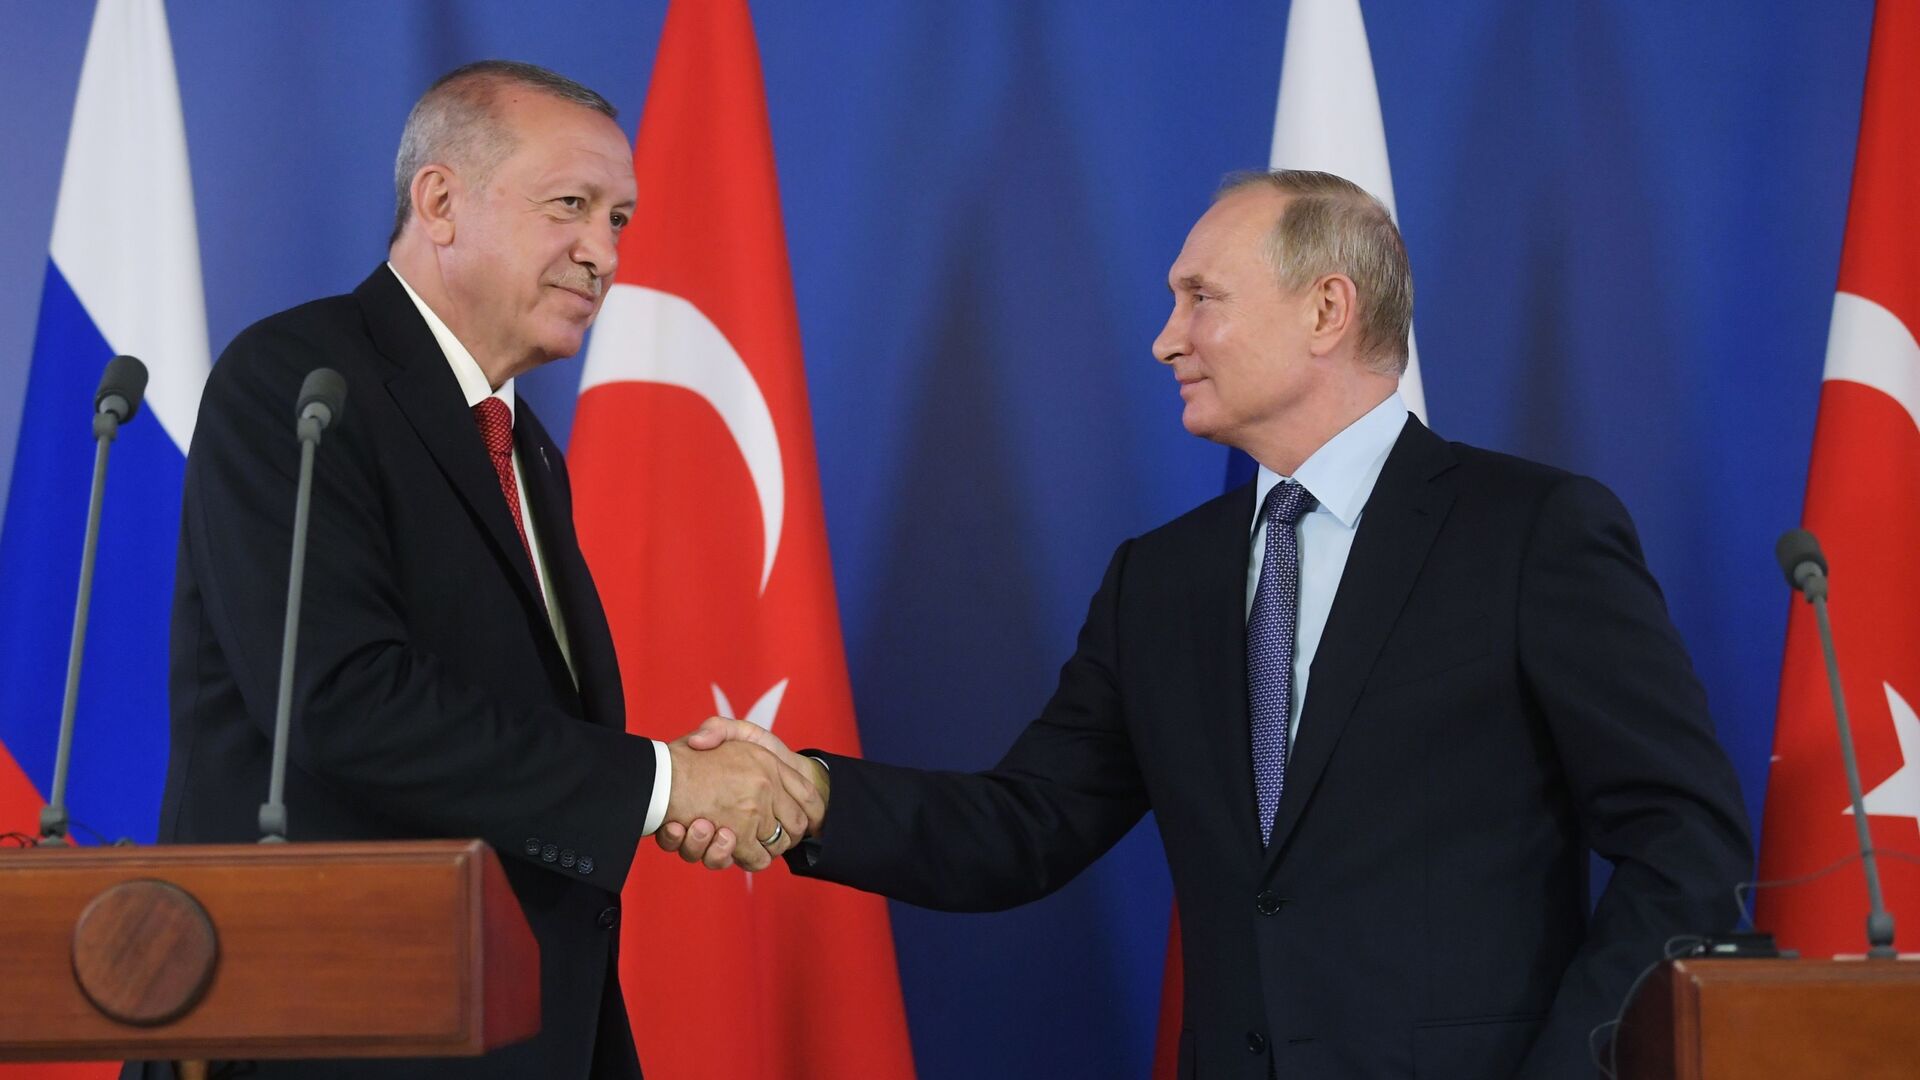 El presidente de Turquía, Recep Tayyip Erdogan, y su homólogo de Rusia, Vladímir Putin - Sputnik Mundo, 1920, 21.08.2021